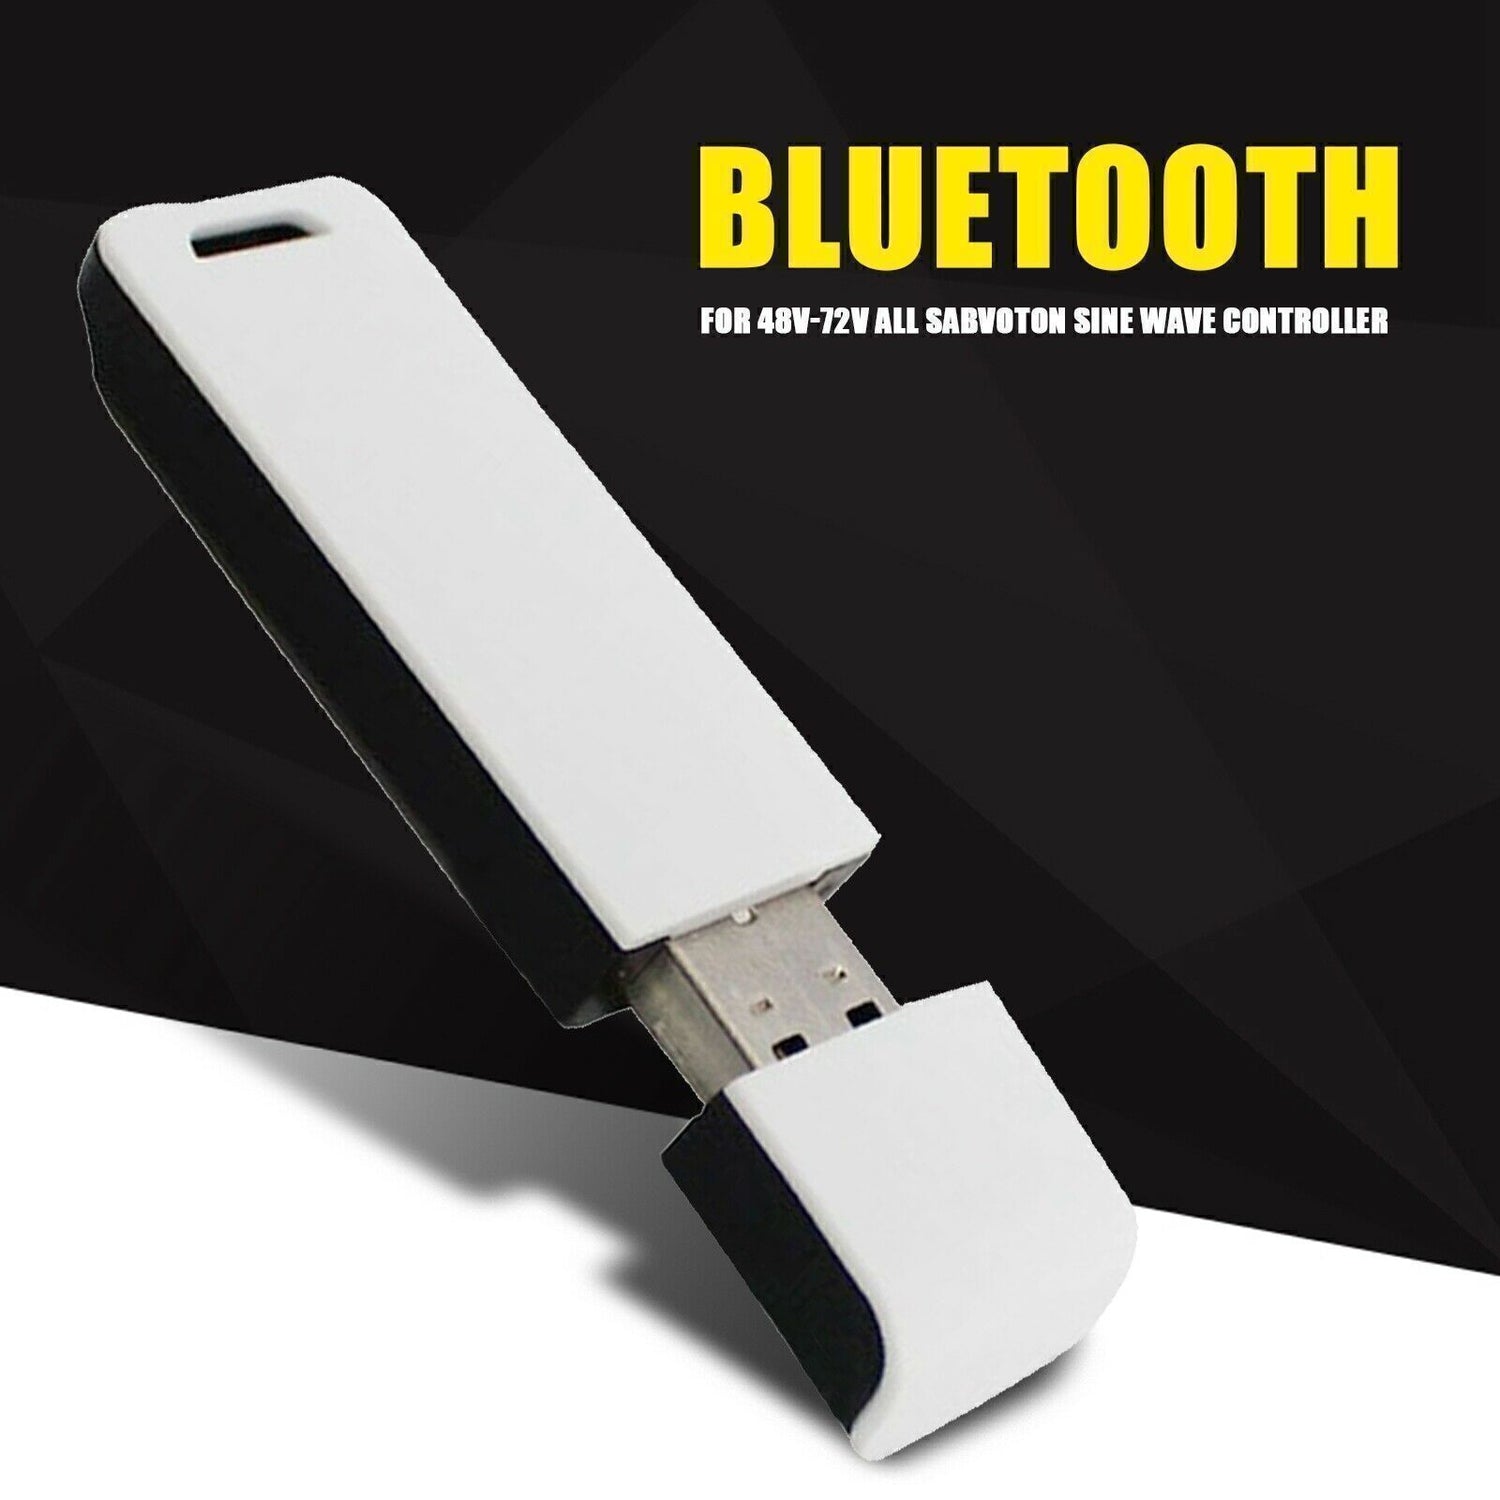 Universal Bluetooth Module For 48v-72v All Sabvoton Sine Wave Controller